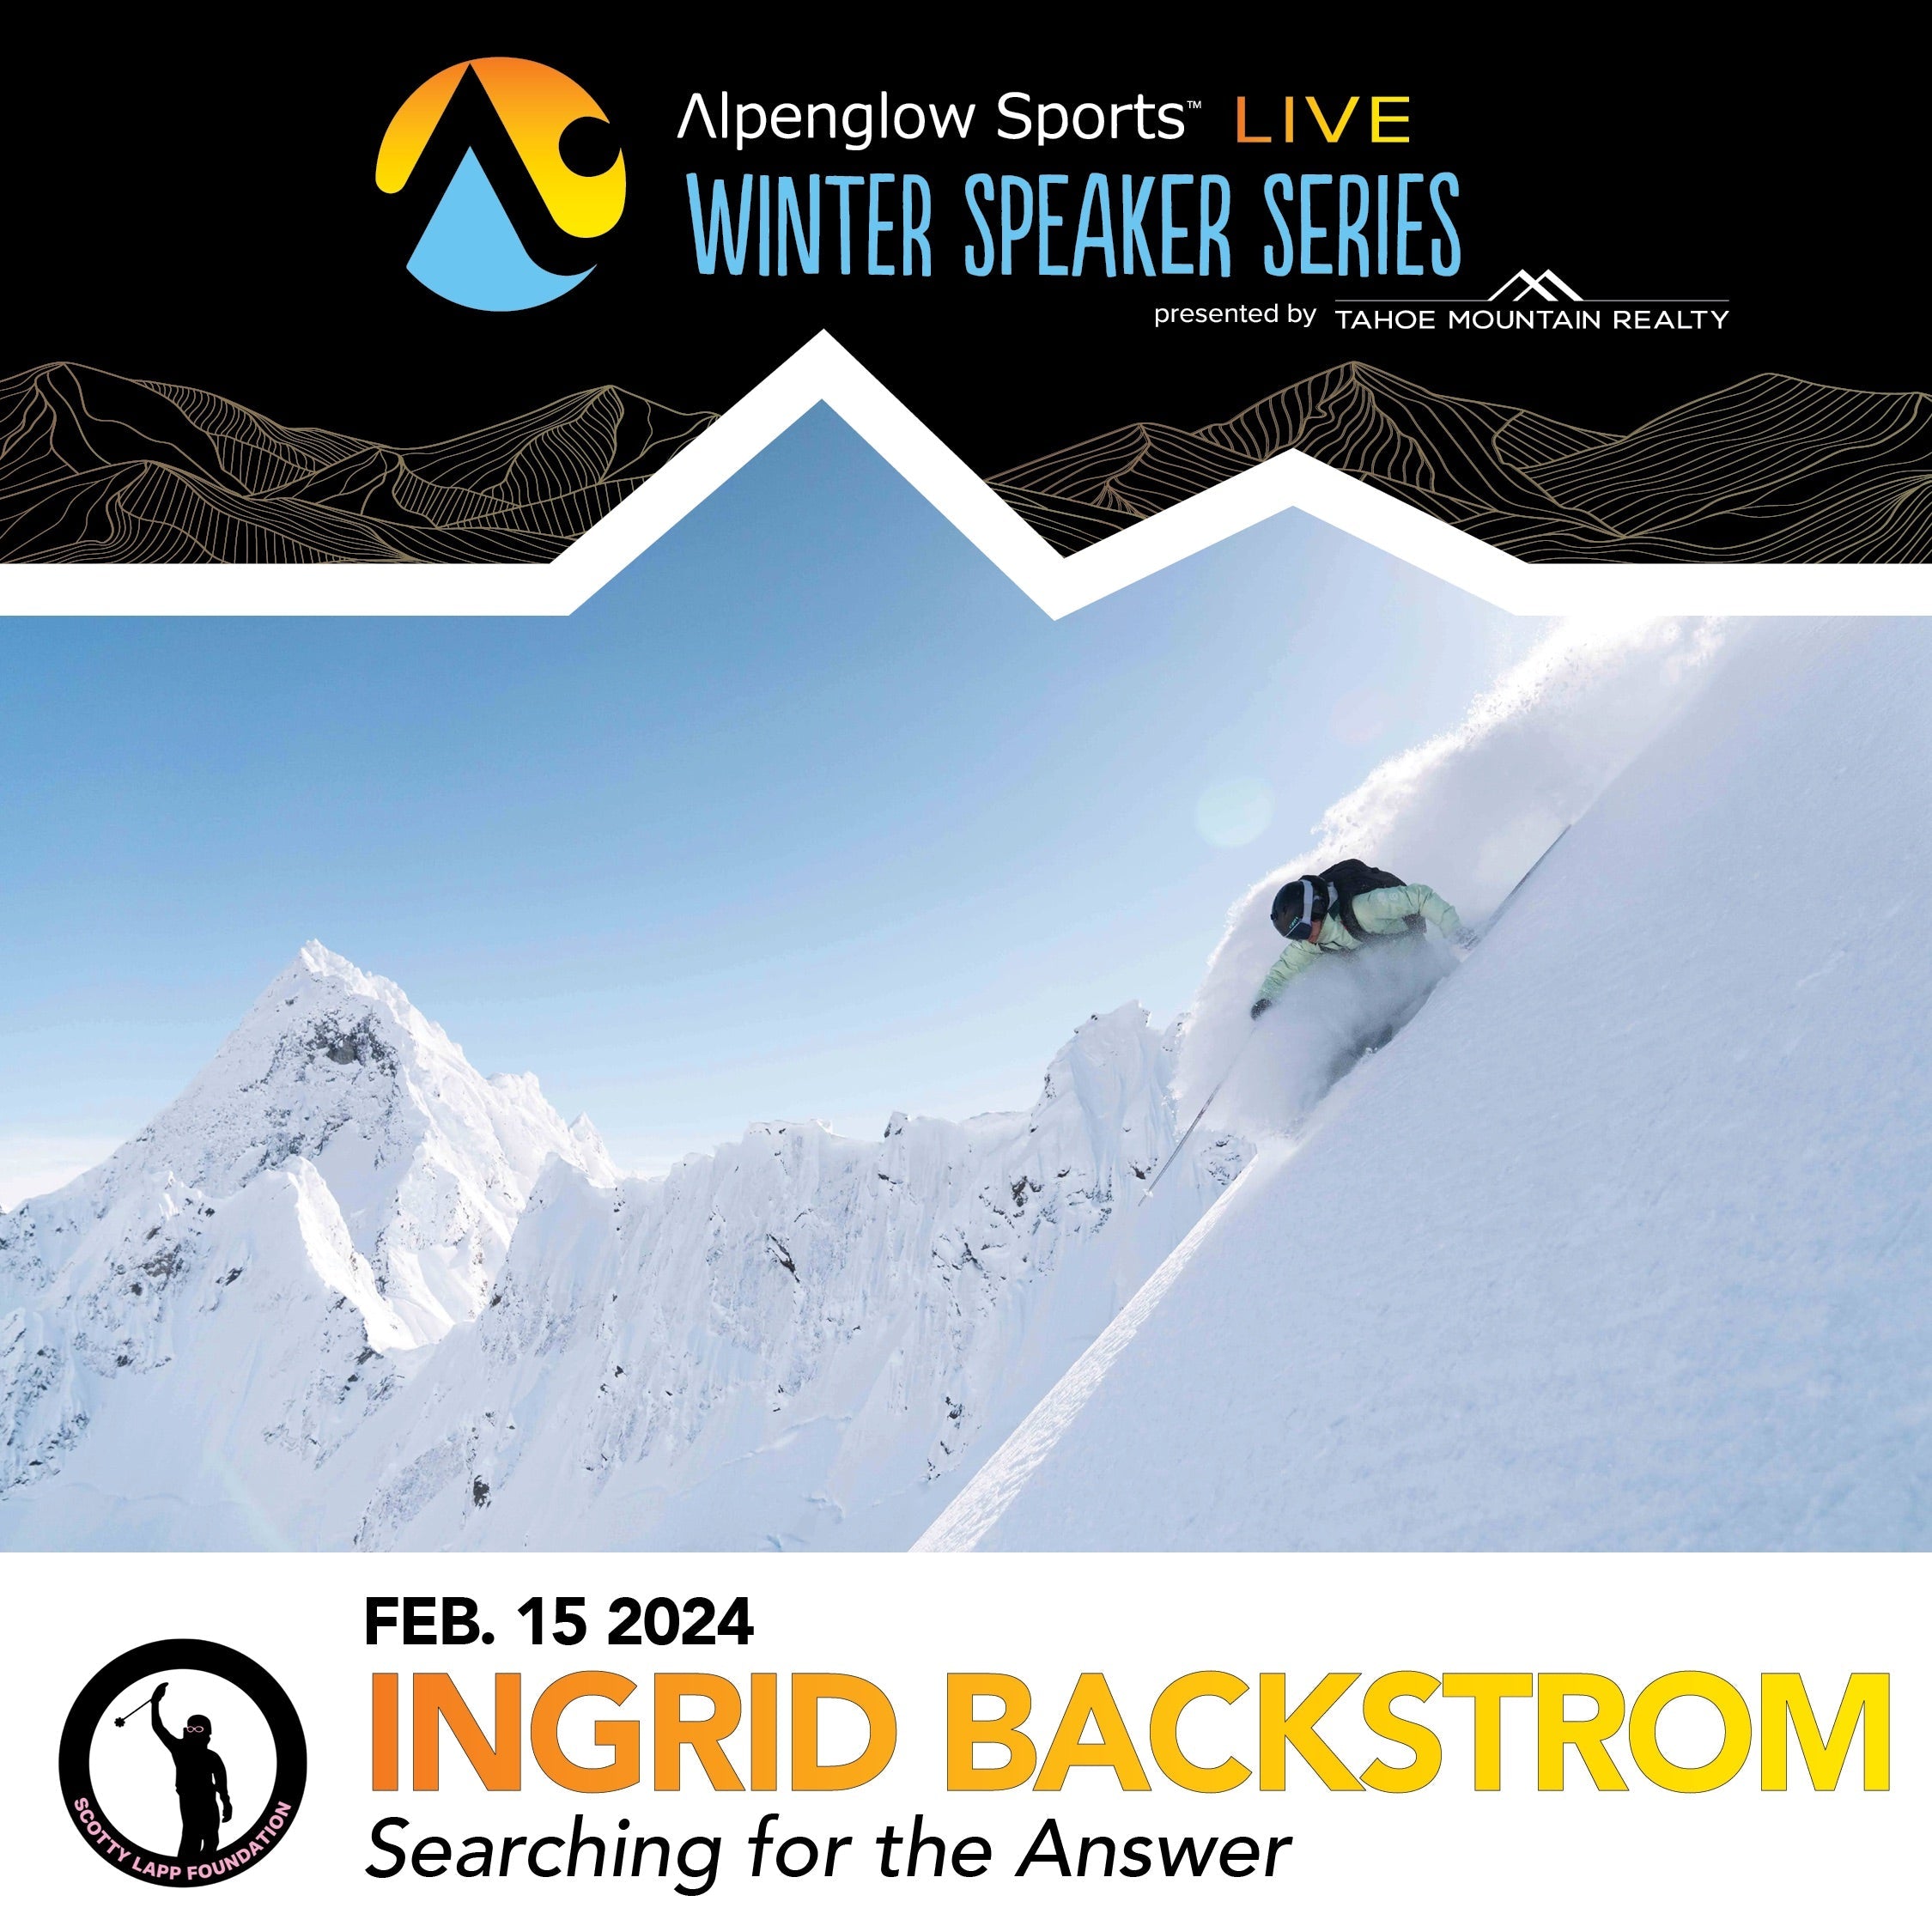 Ingrid Backstorm skis powder